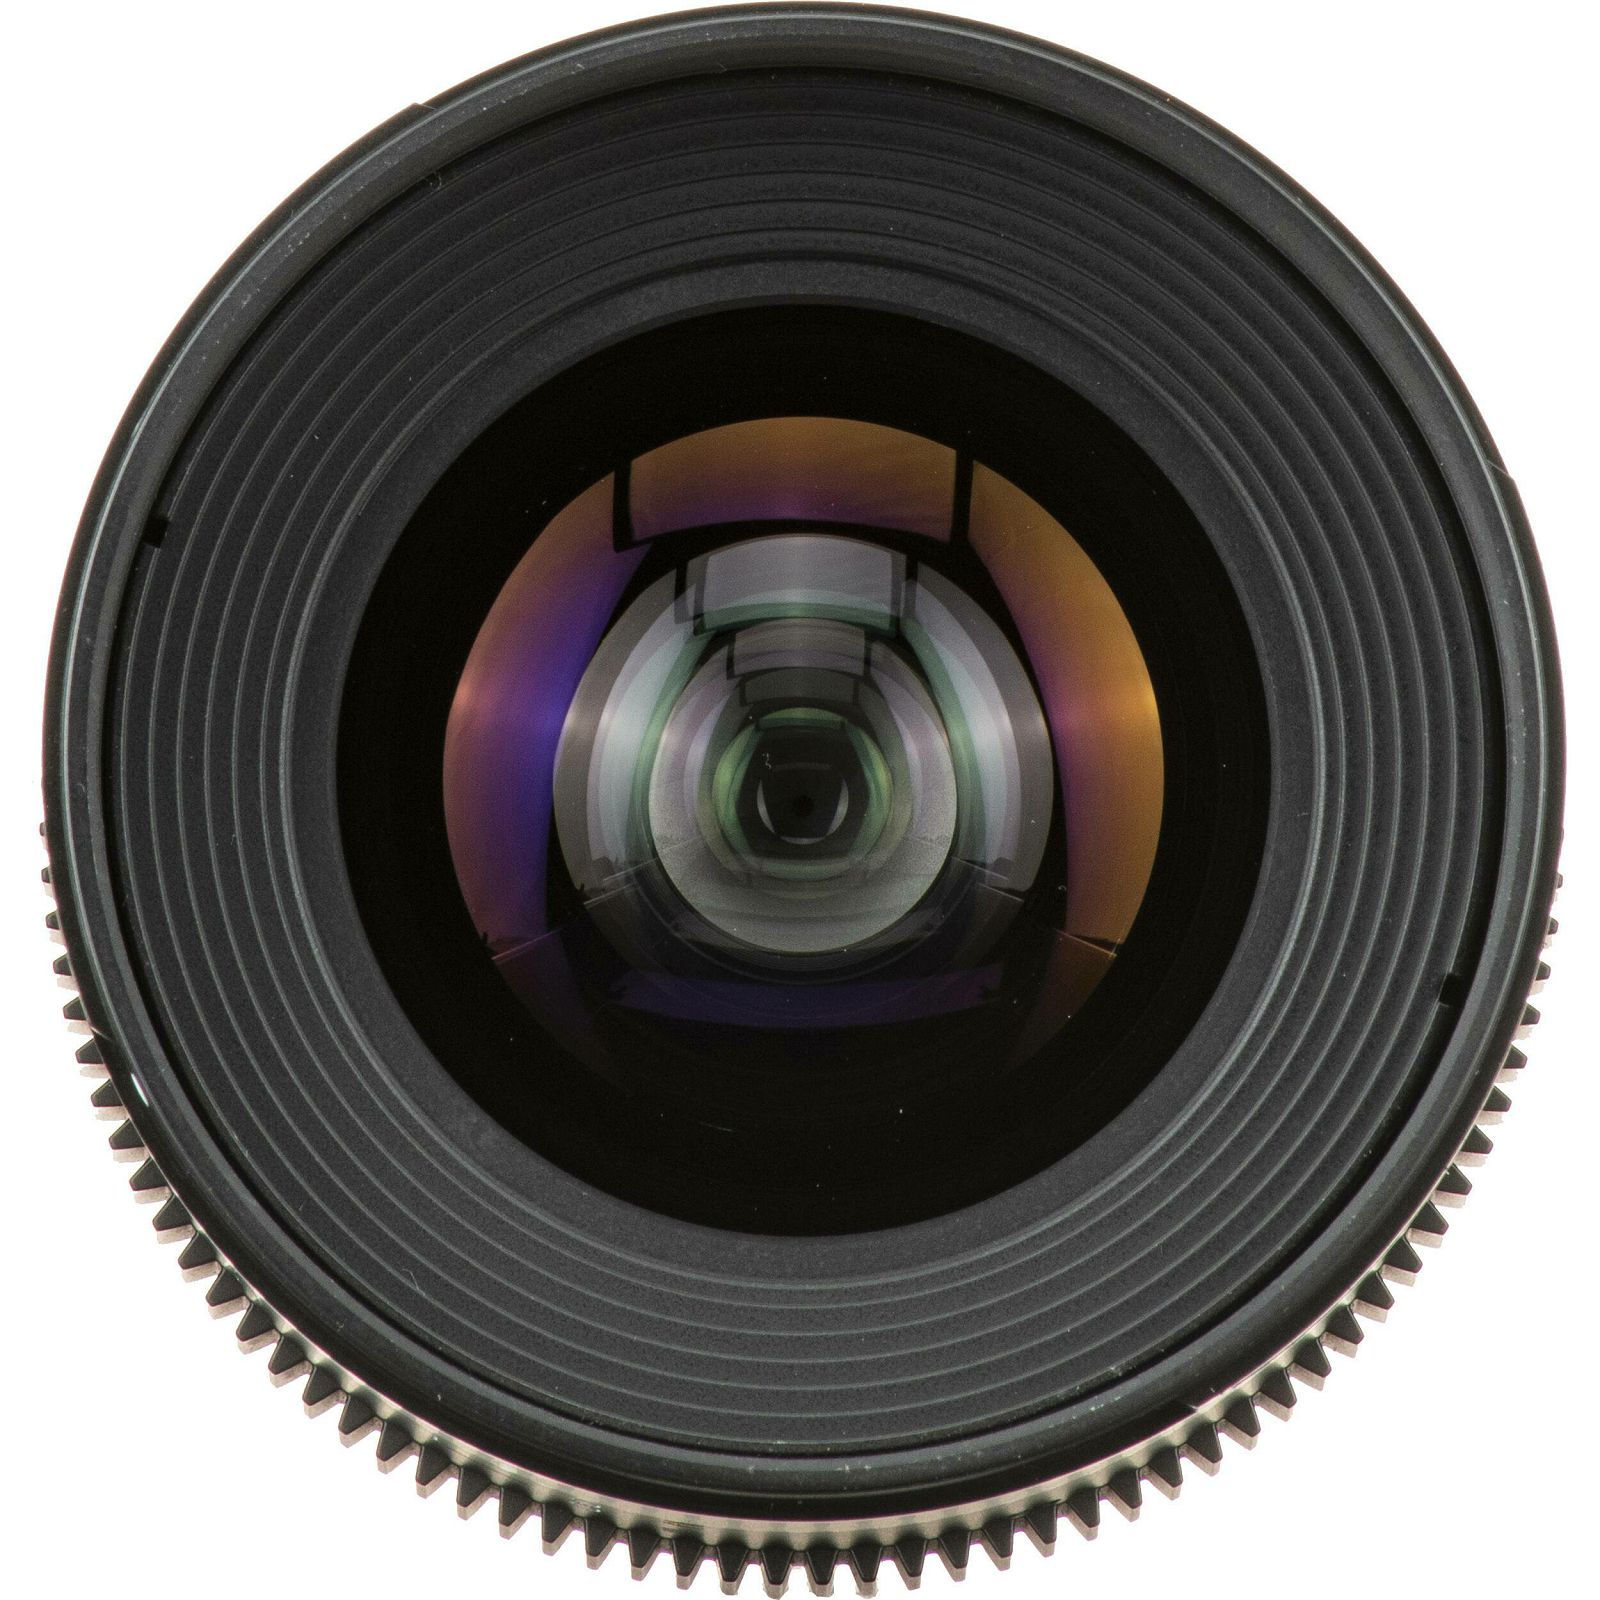 Samyang VDSLR Kit 4 = 24mm T1.5 + 35mm T1.5 + 50mm T1.5 + 85mm T1.5 MK2 Canon EF + Hardcase